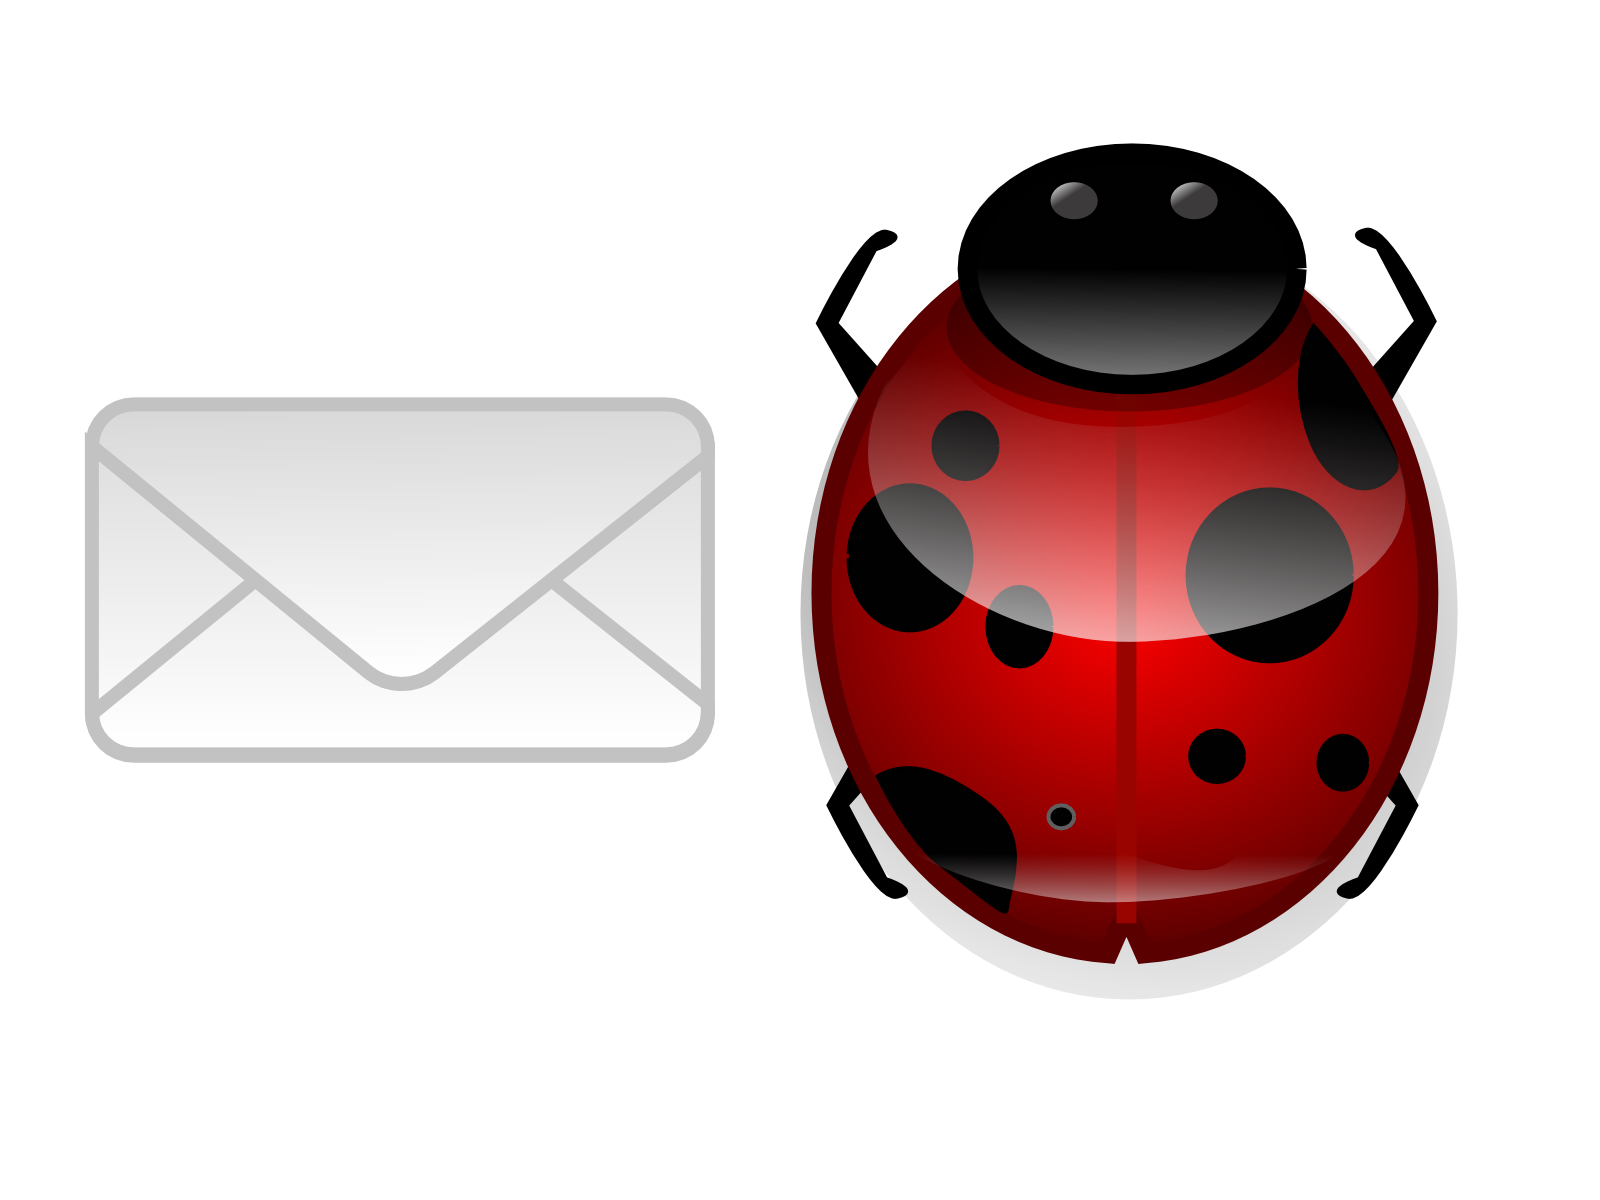 ladybug and mail icons by dakki000 customization icons dock icons 2006 ...